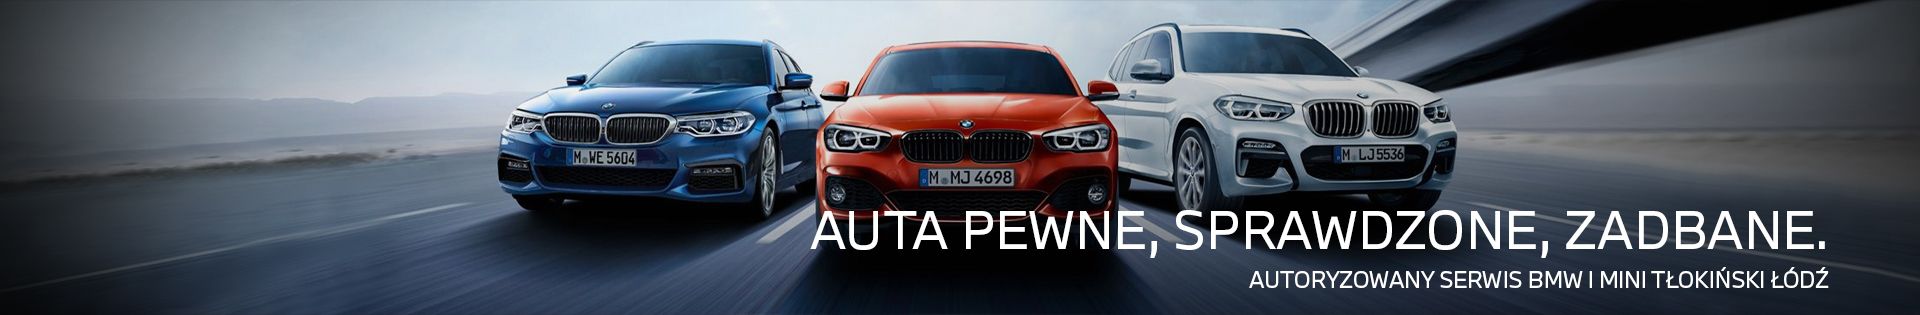 BMW Tłokiński - Autoryzowany Serwis BMW i Mini top banner